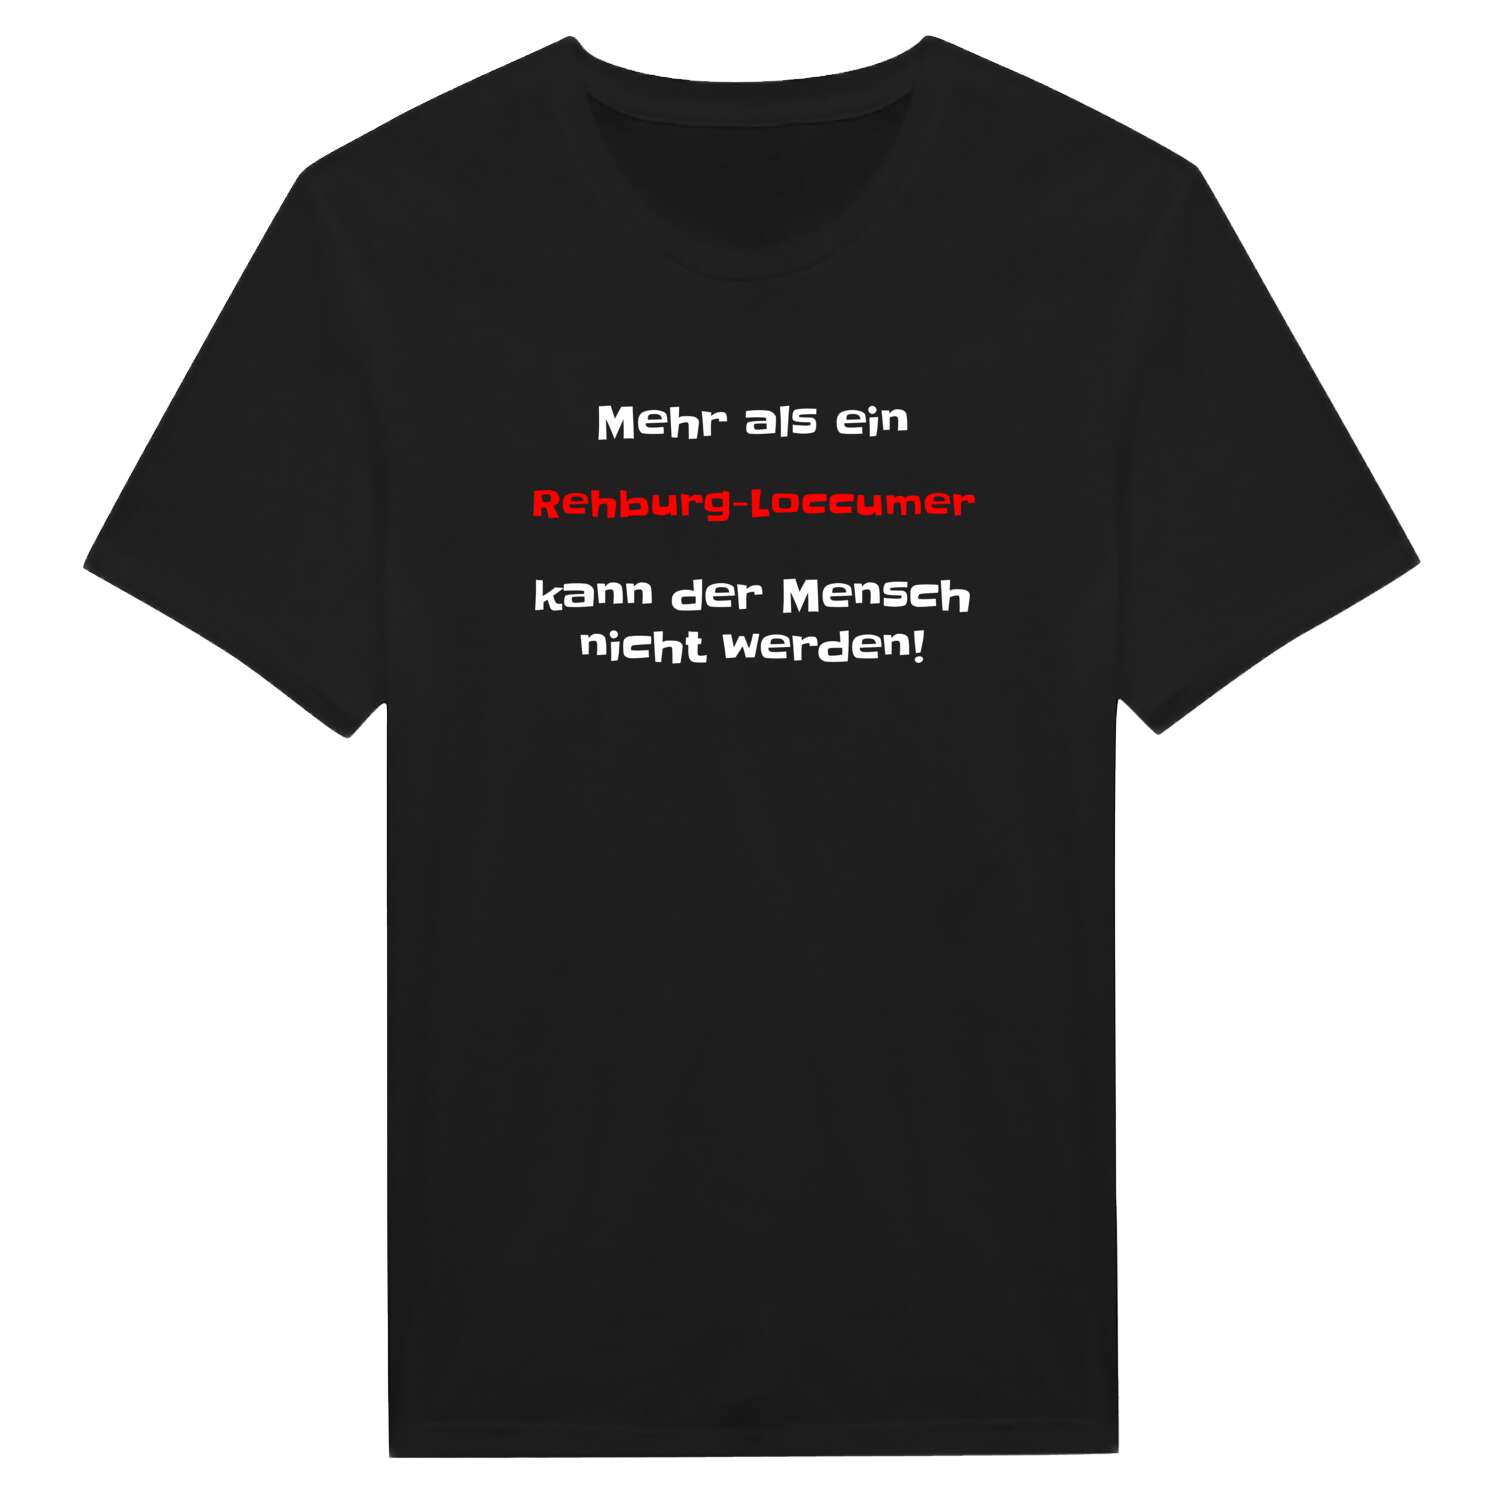 Rehburg-Loccum T-Shirt »Mehr als ein«